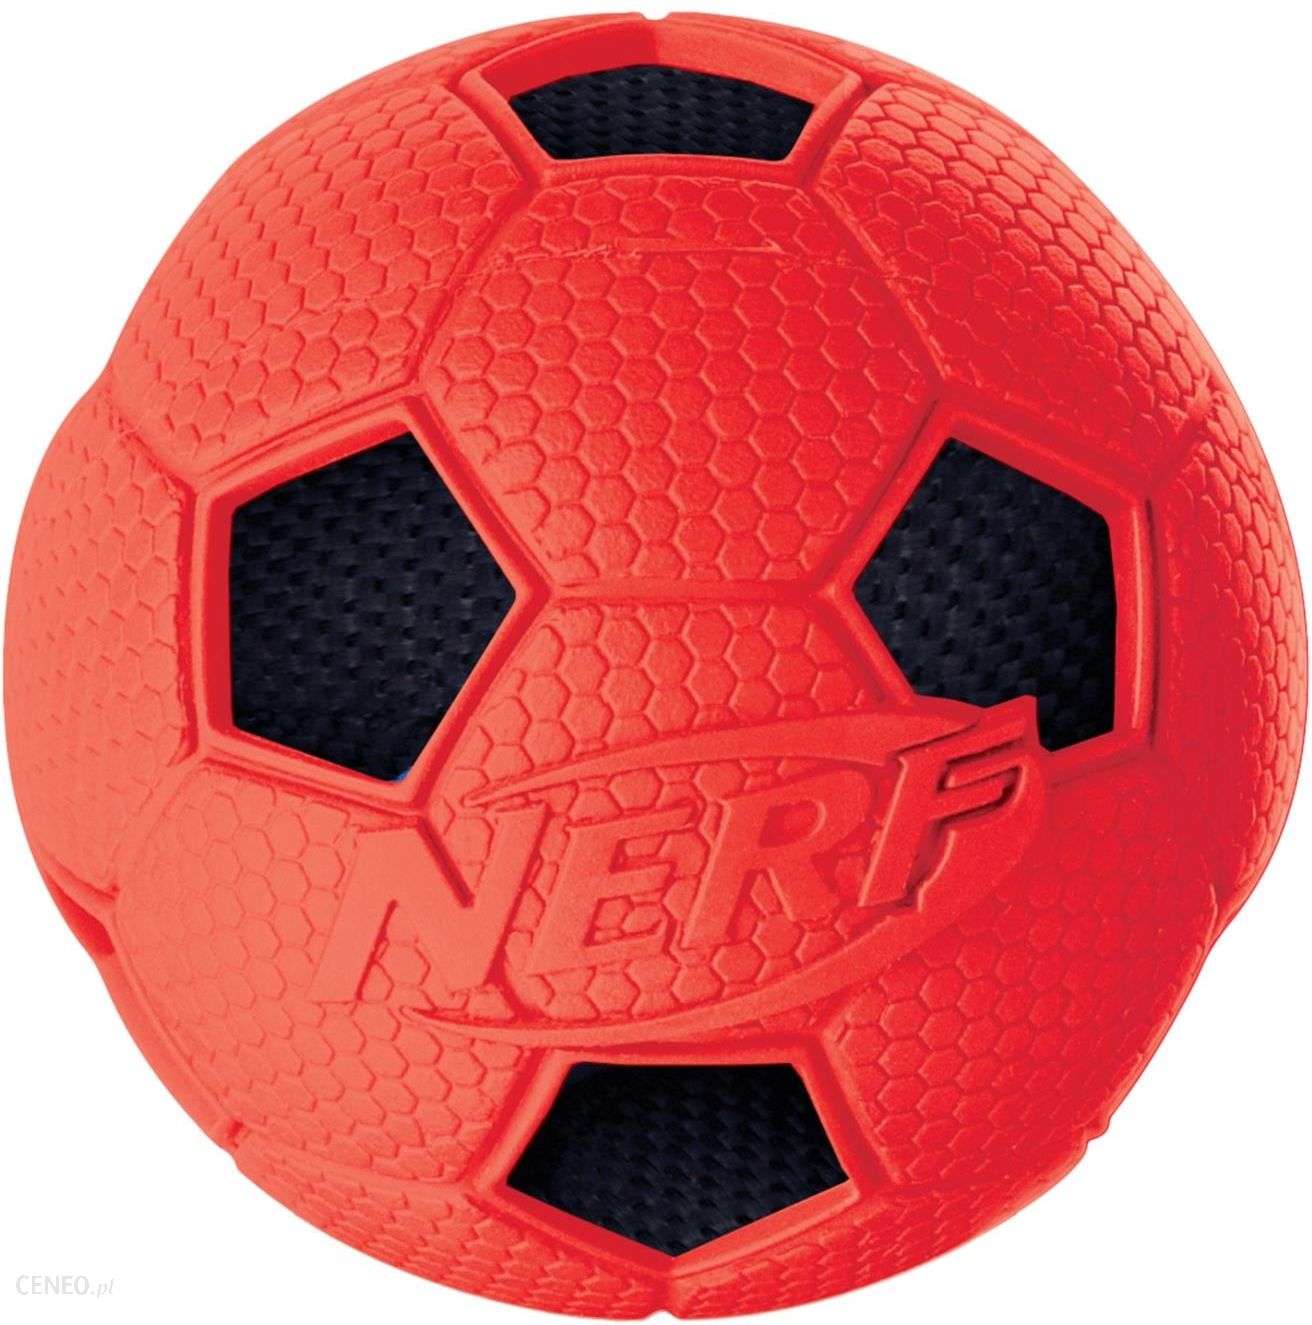 Мяч 6 футбол. Nerf Dog мяч. Мяч НЕРФ для собак. Нёрф мяч футбольный, 6 см. Красный мячик.